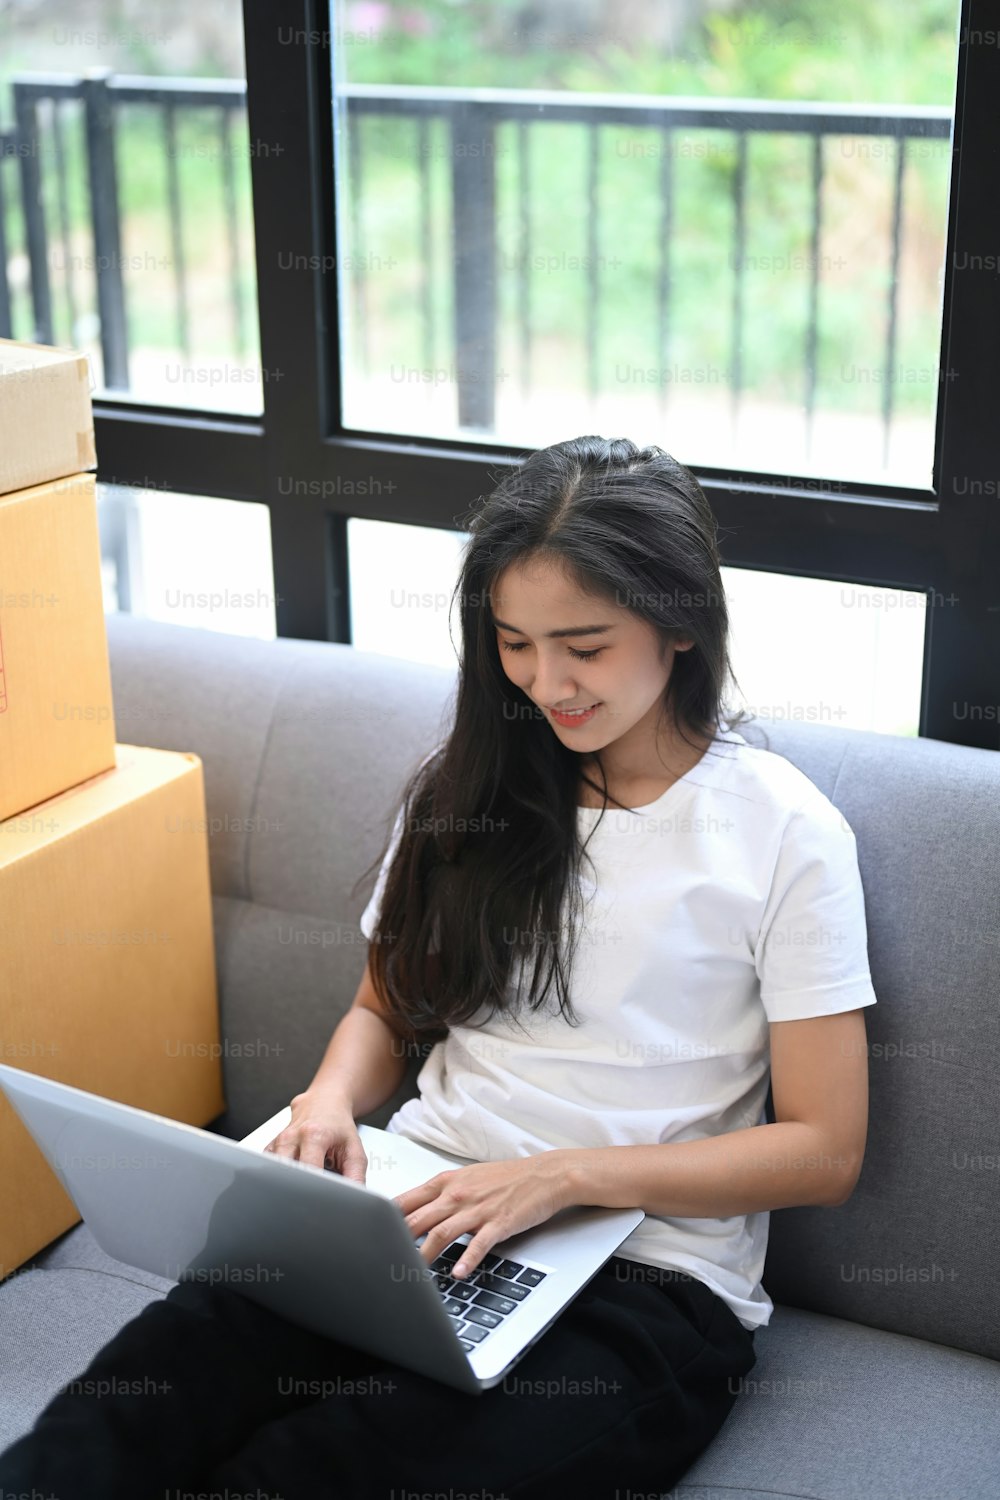 Giovane imprenditore asiatico avvia il proprietario del venditore online che utilizza il laptop per controllare gli ordini dei clienti dal sito Web mentre è seduto sul divano.